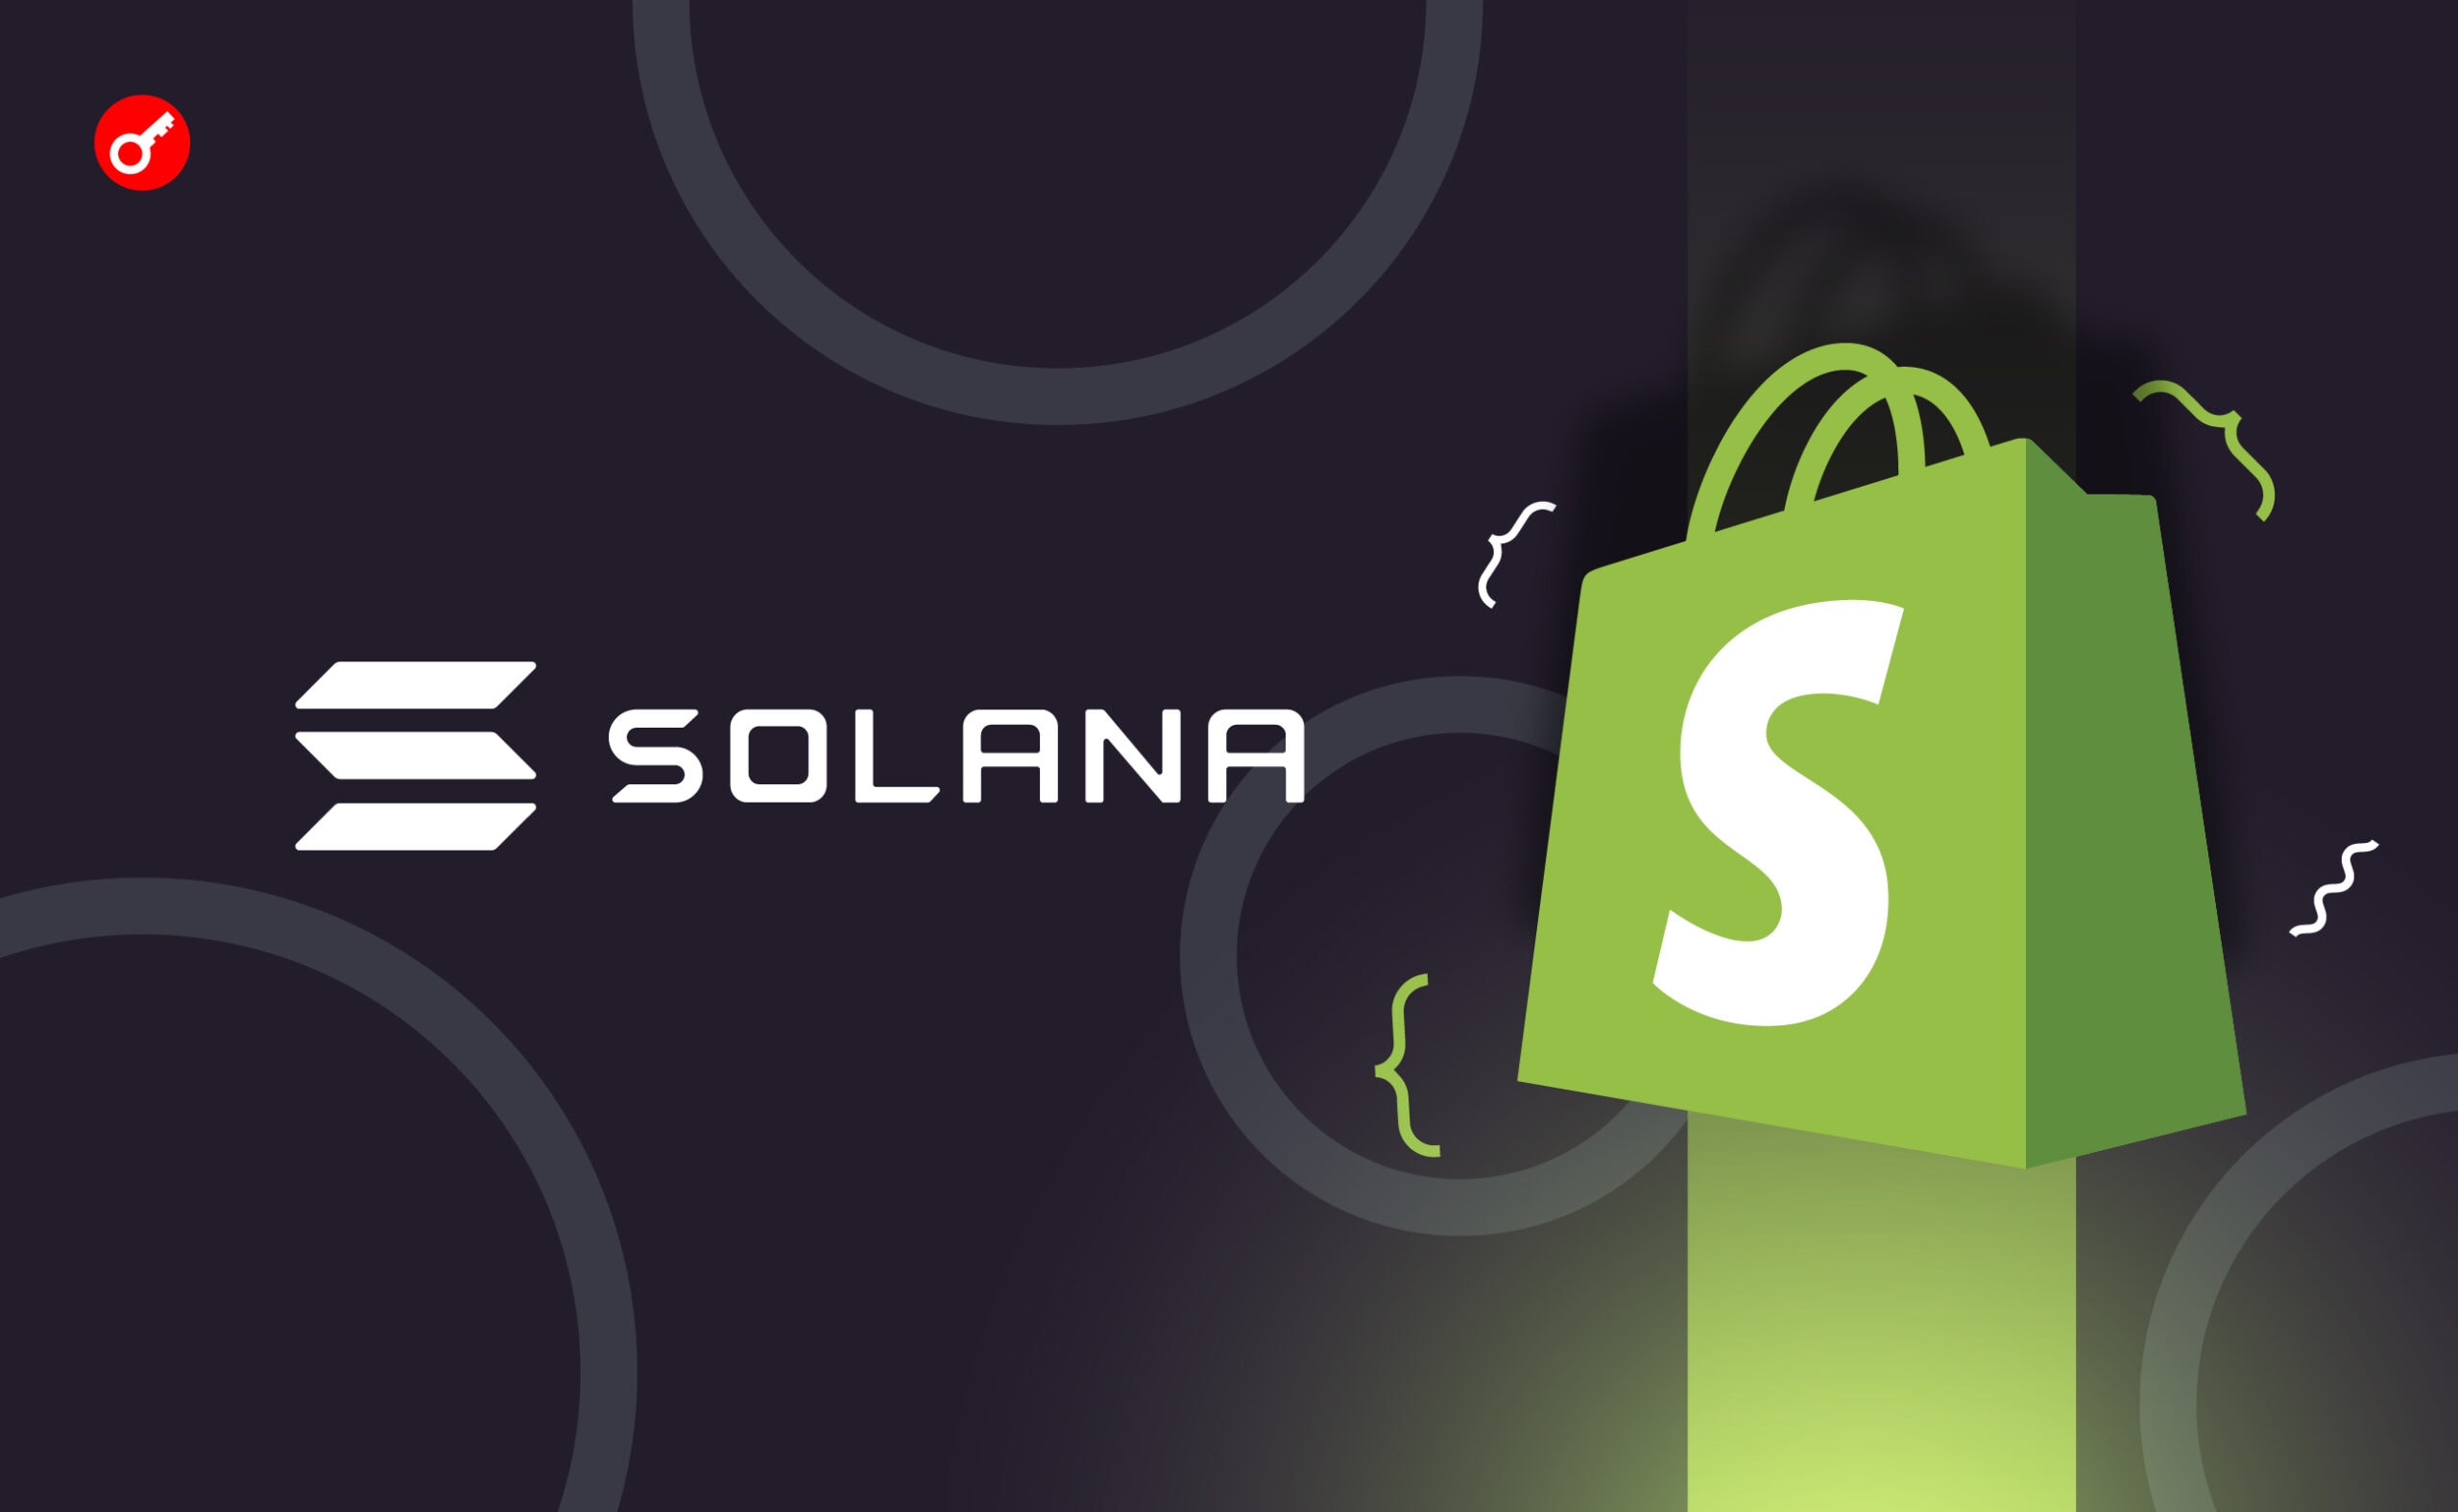 Shopify інтегрувала Solana Pay. Головний колаж новини.